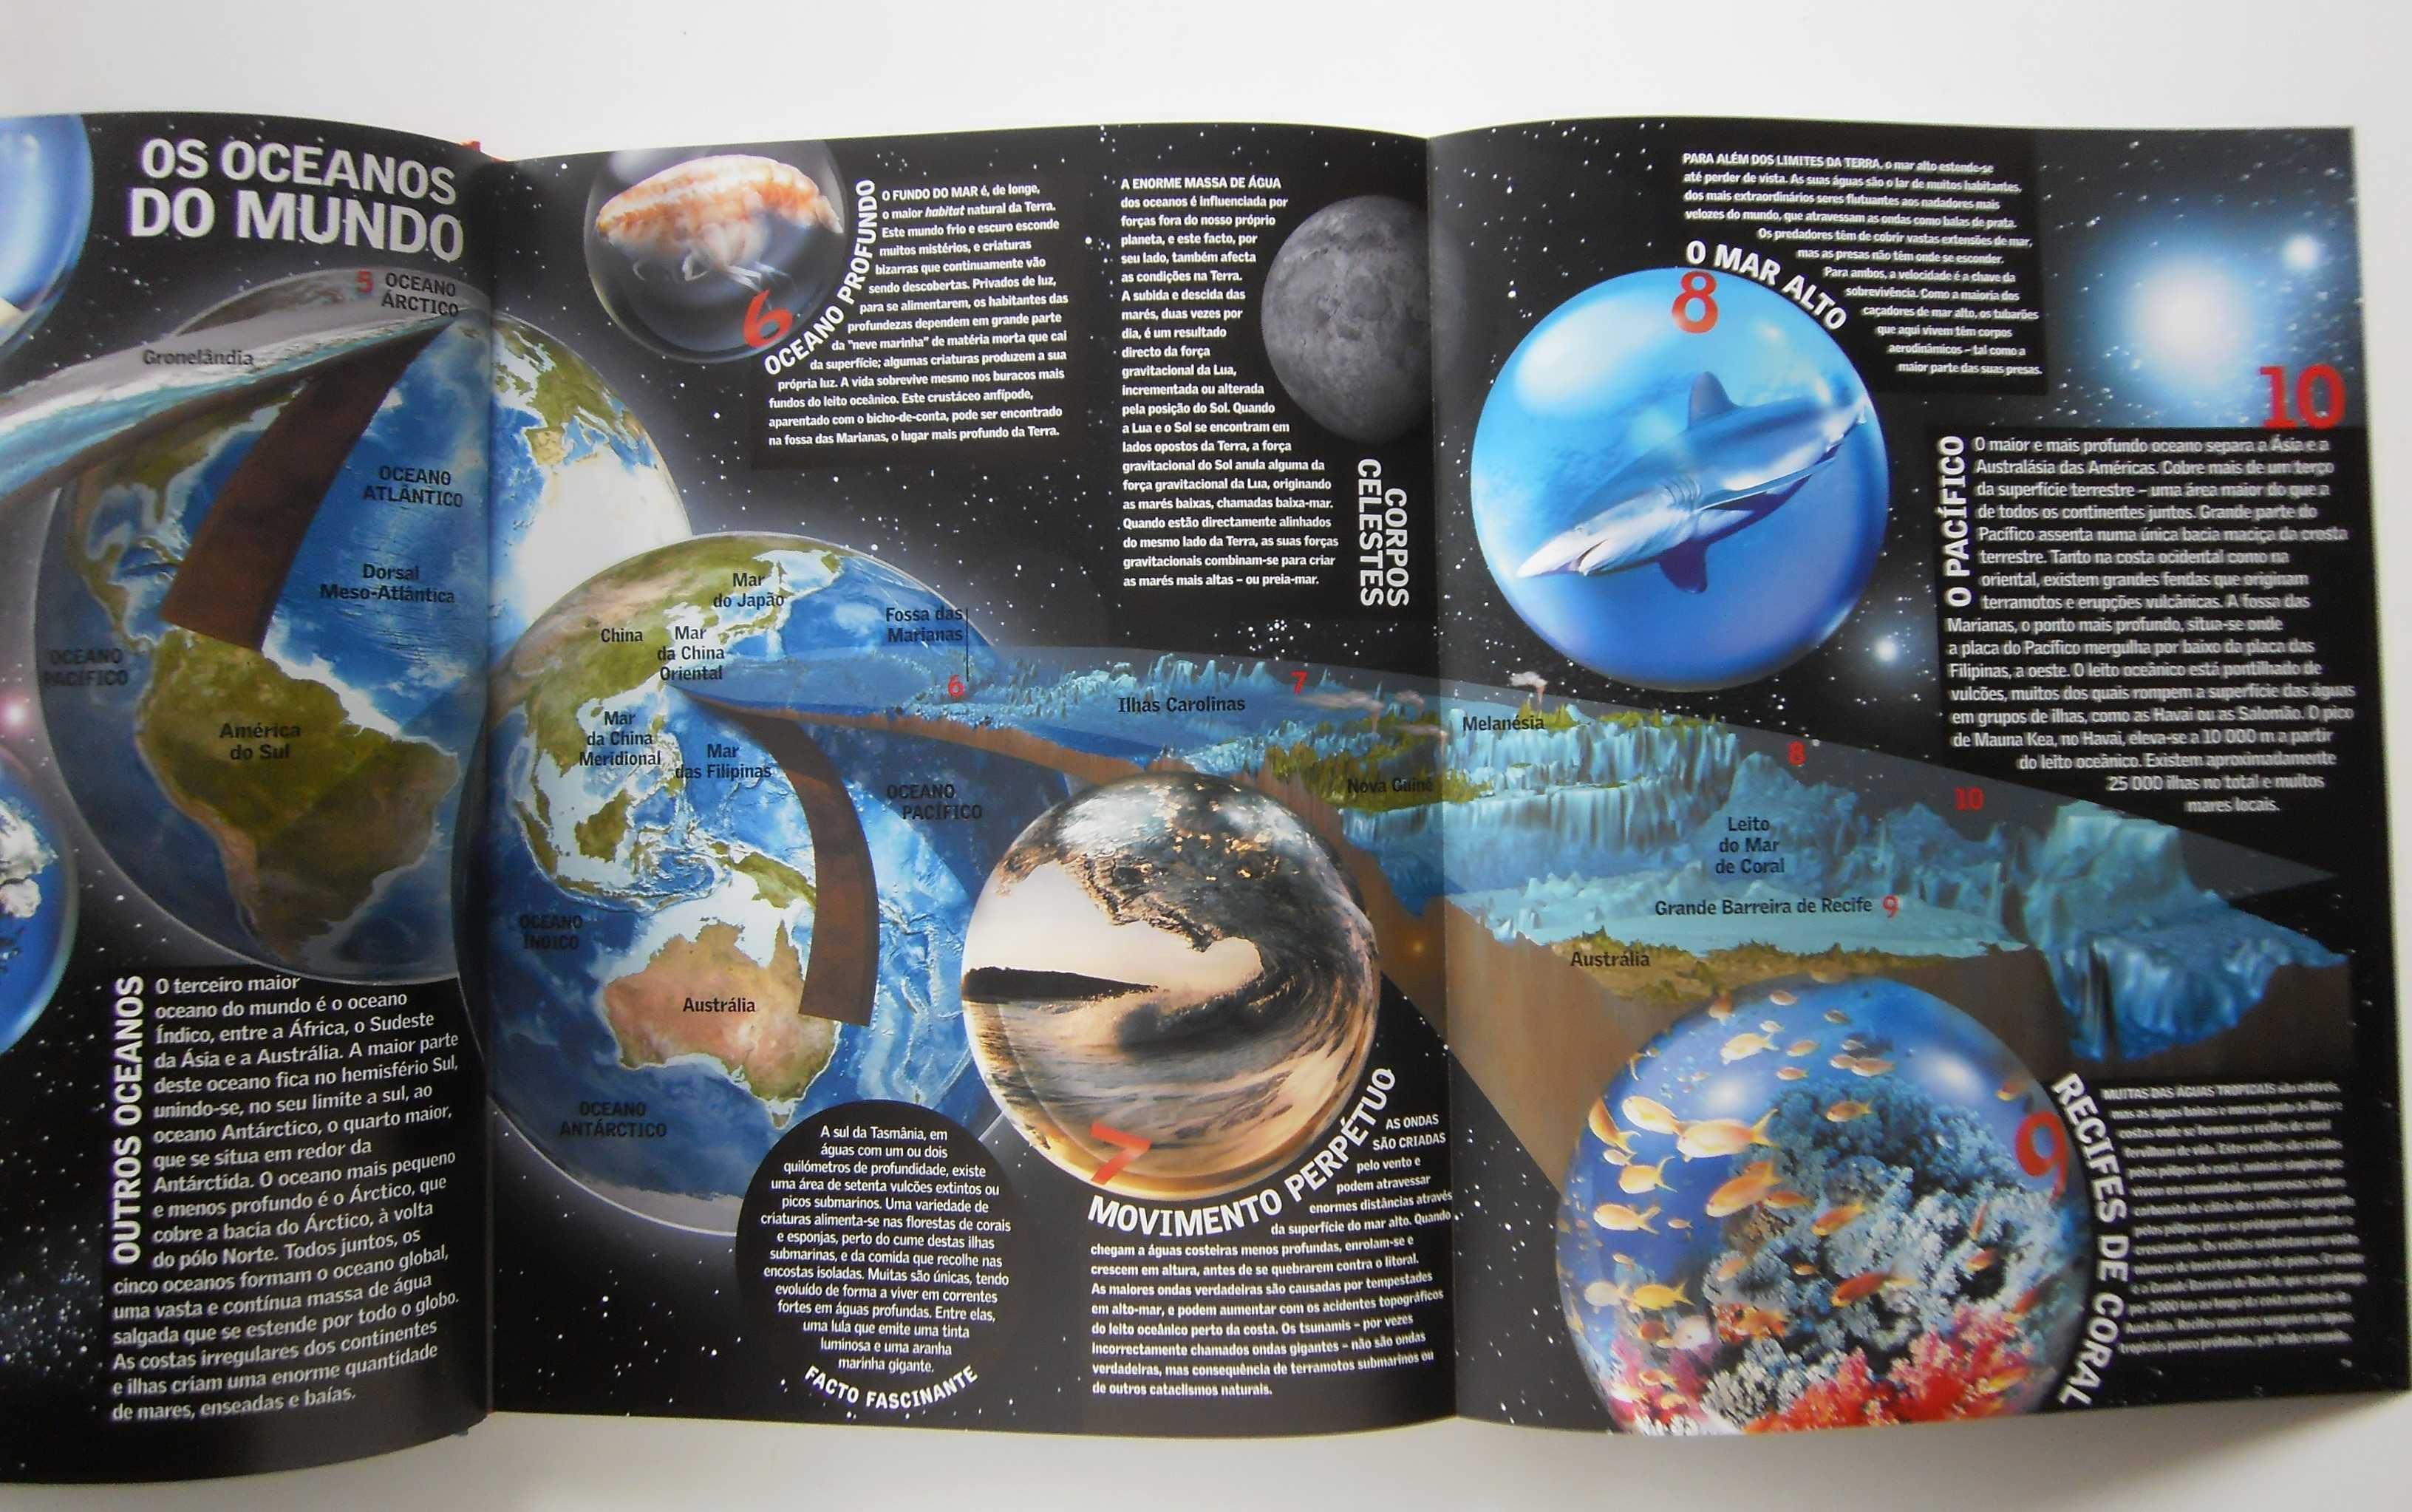 Grande Enciclopédia da Natureza "A Força dos Oceanos" Reader's Digest